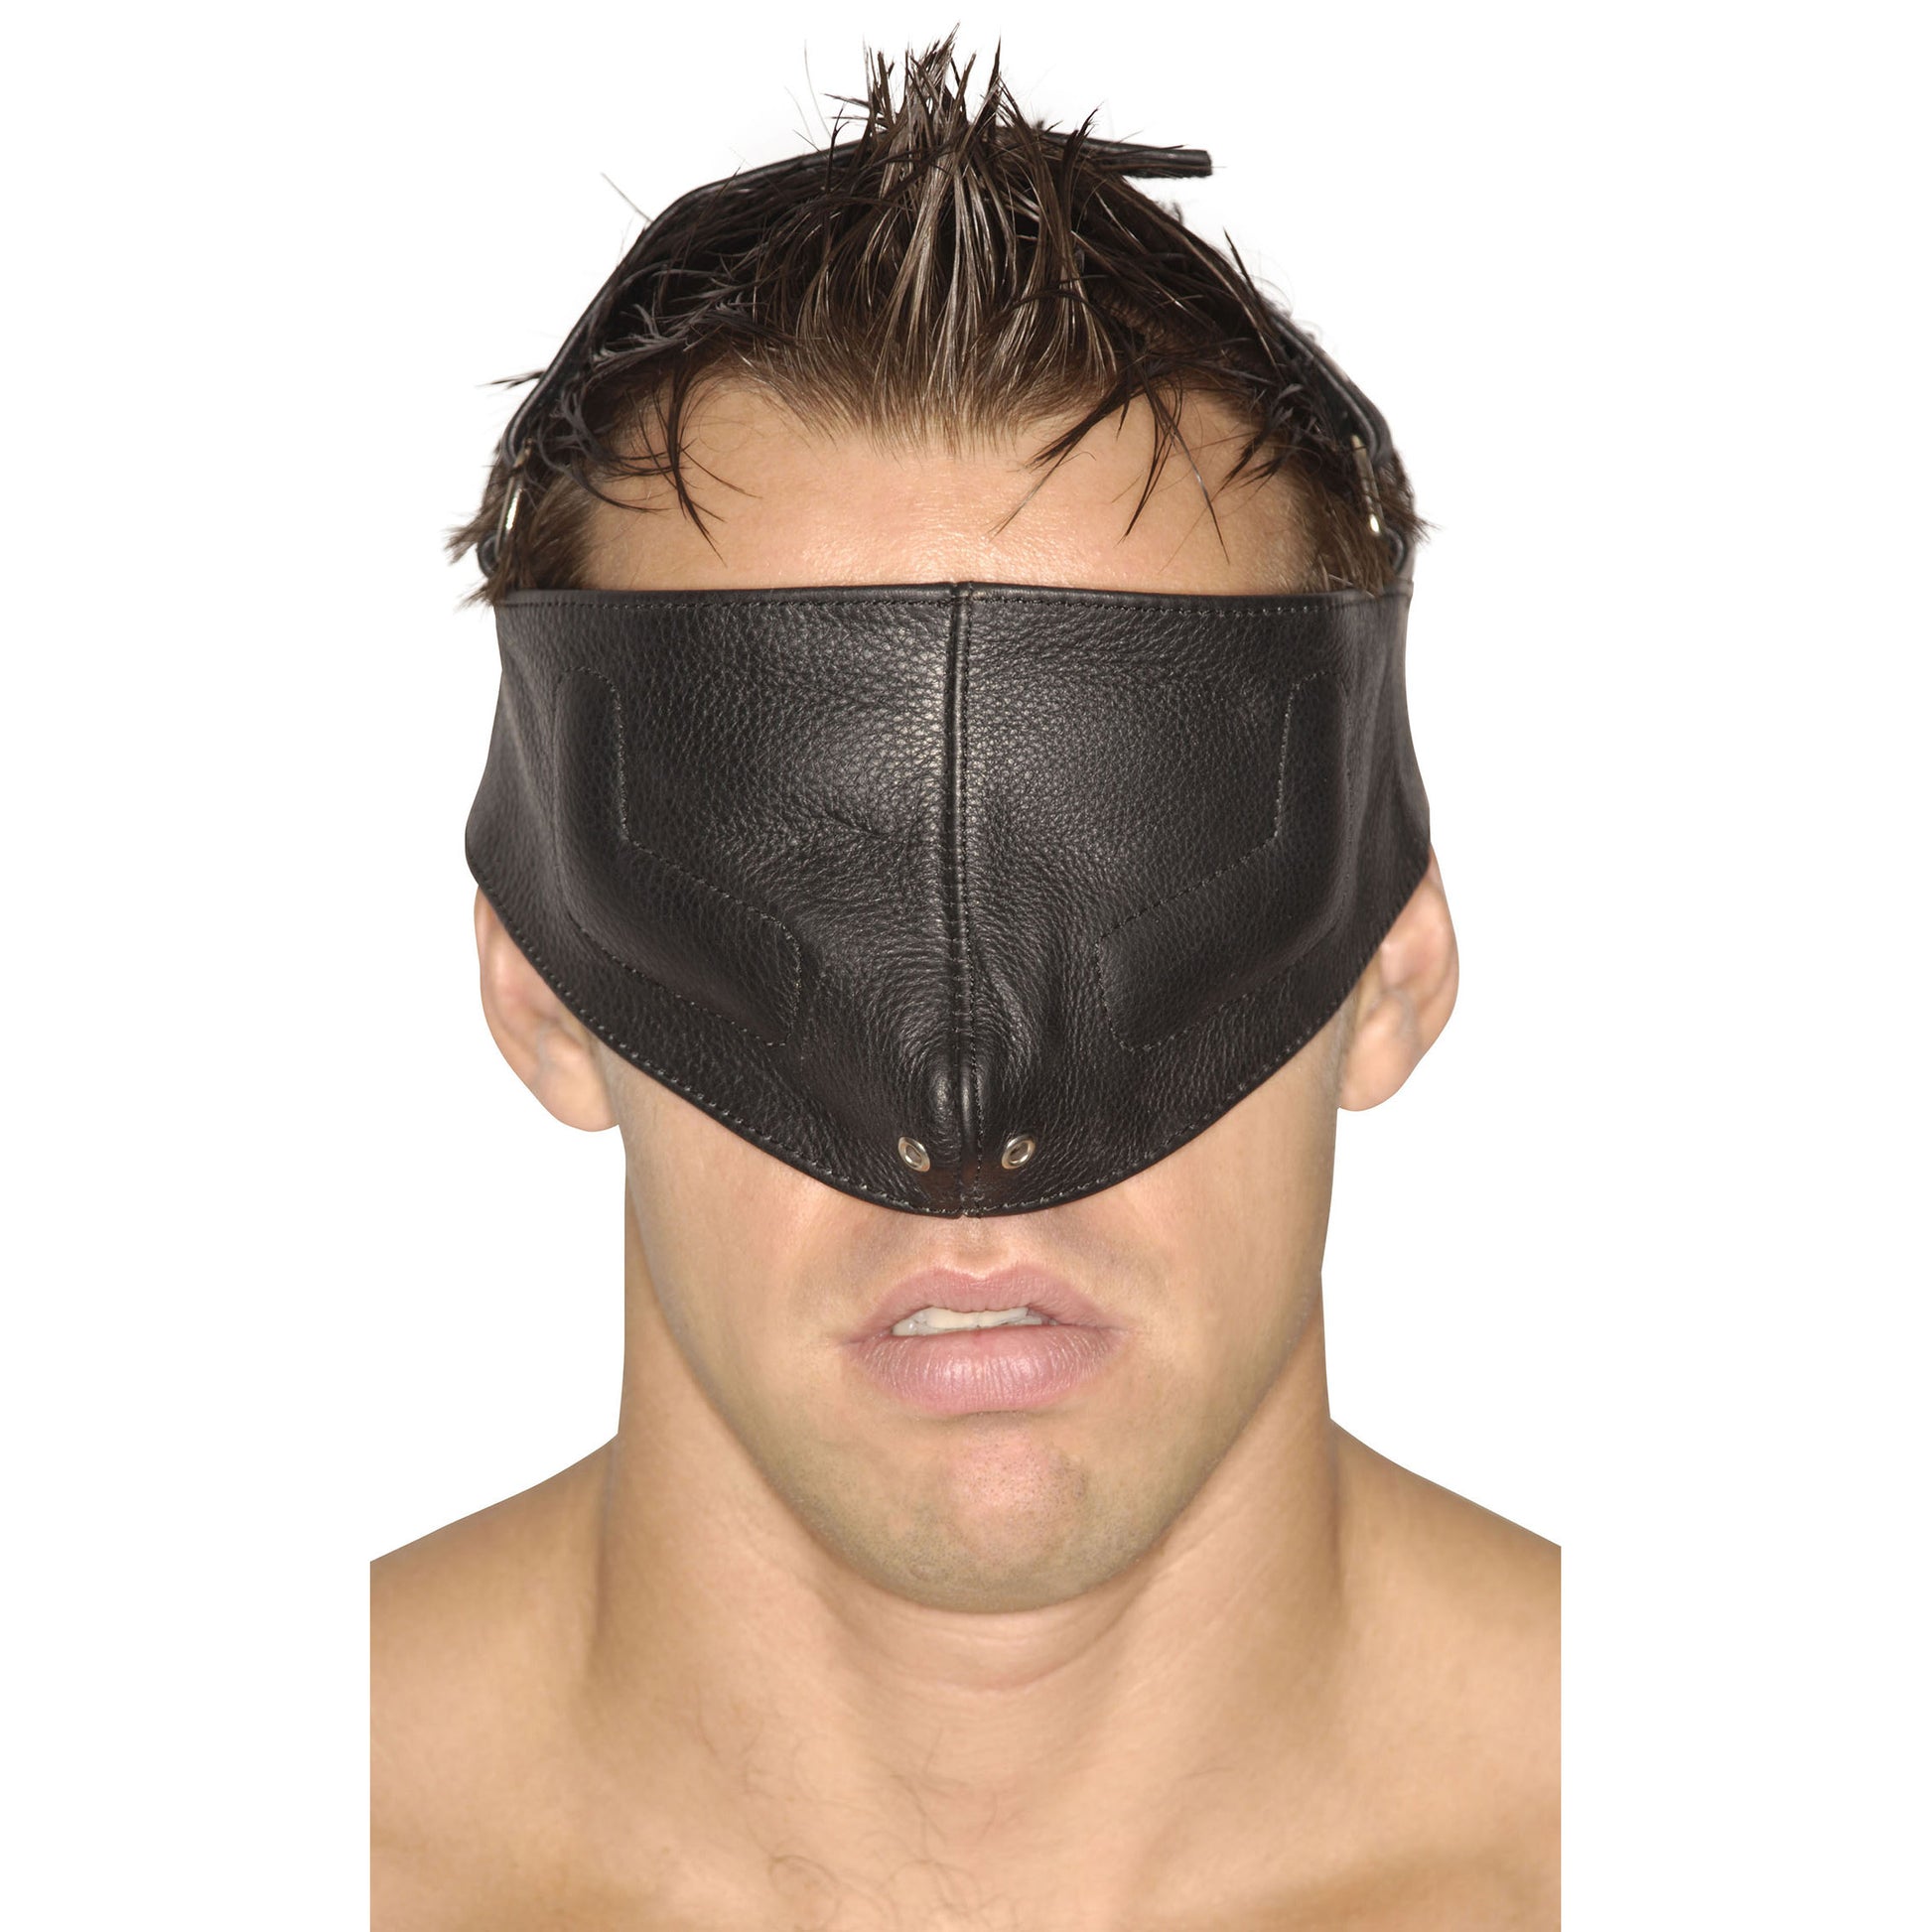 Strict Leather Upper Face Mask-SM - UABDSM